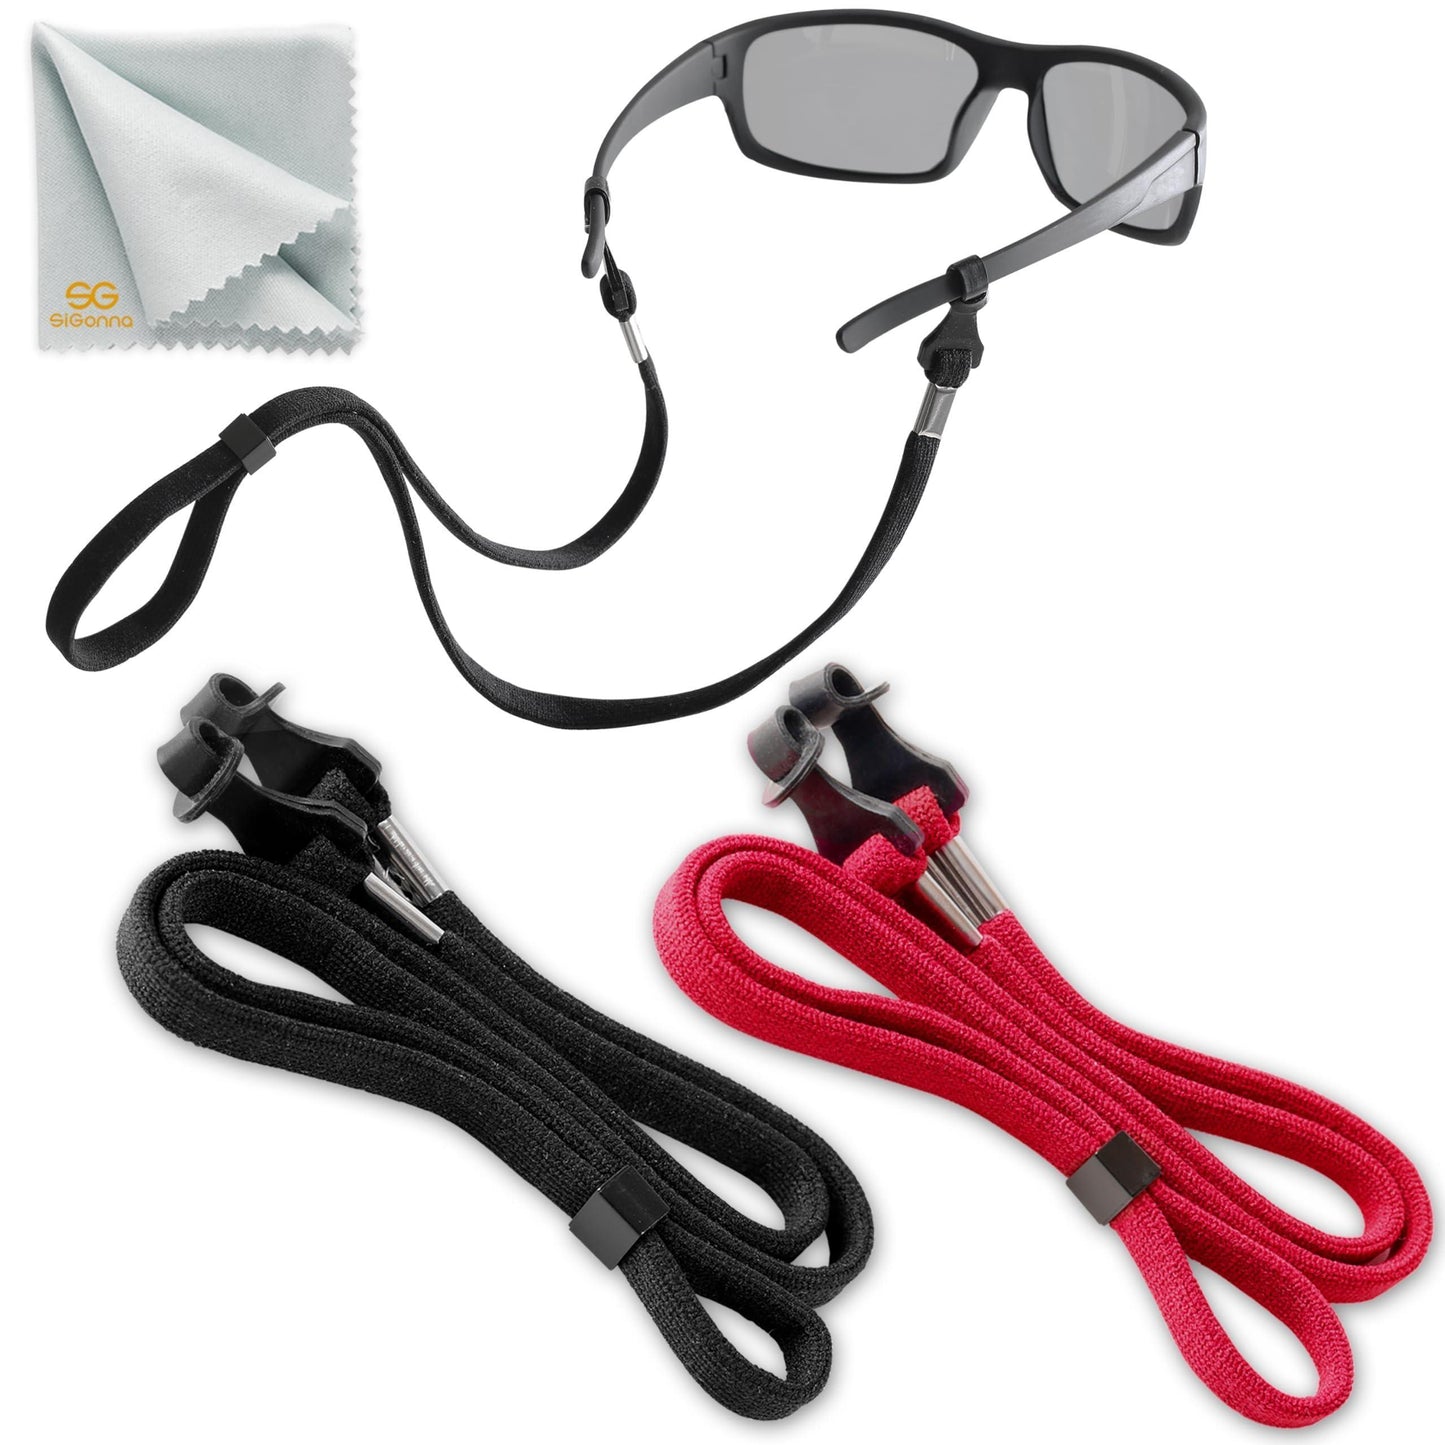 SIGONNA Eye Glasses String Holder Strap - Eyeglass Straps Cords for Men Women - Eyeglass Holders Around Neck - Sunglasses String Chain Lanyard Retainer - 2 Pcs (Black Red) - Loomini